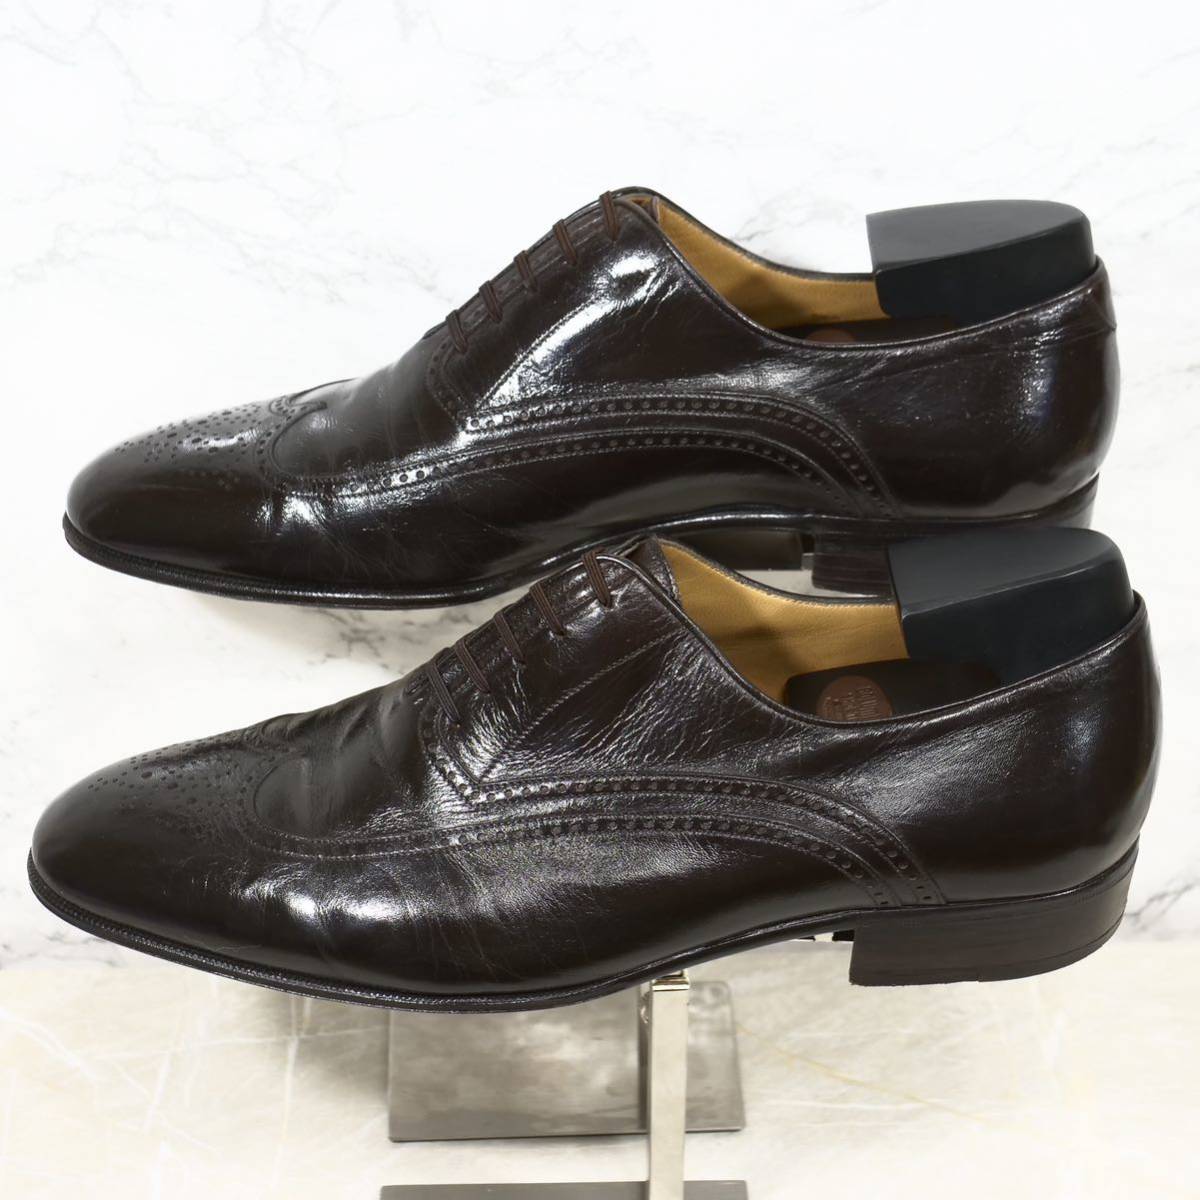 《最高級◎/イタリア製》ARTIOLI アルティオリ レイジーマン UK8 ダークブラウン ビジネスシューズ メンズ カンガルーレザー 革靴_画像3